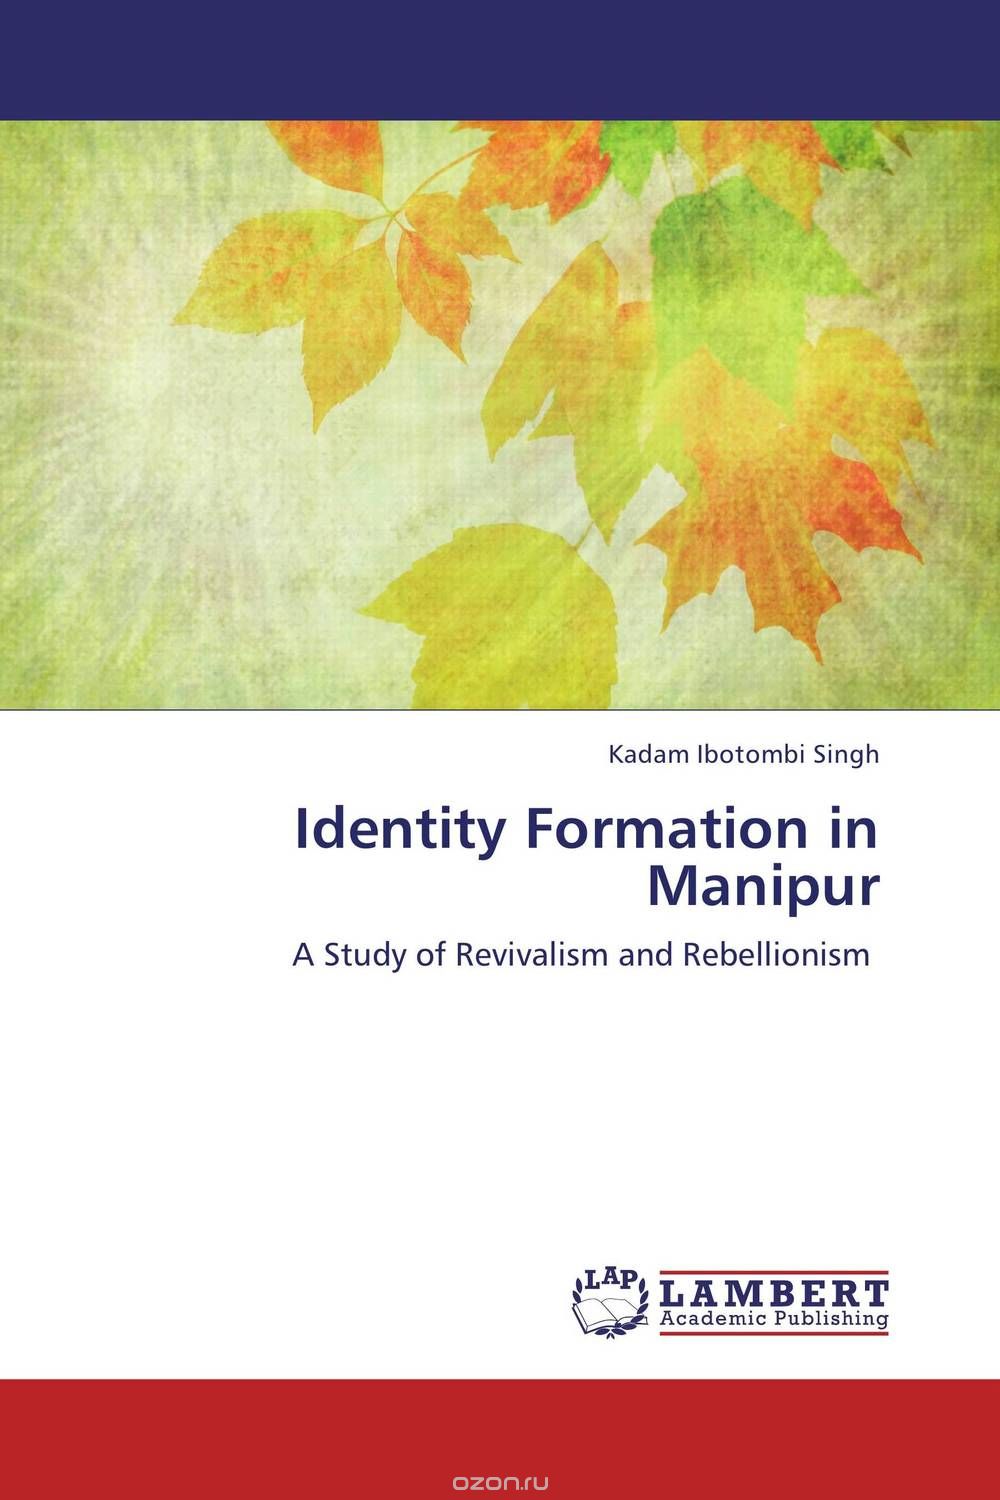 Скачать книгу "Identity Formation in Manipur"